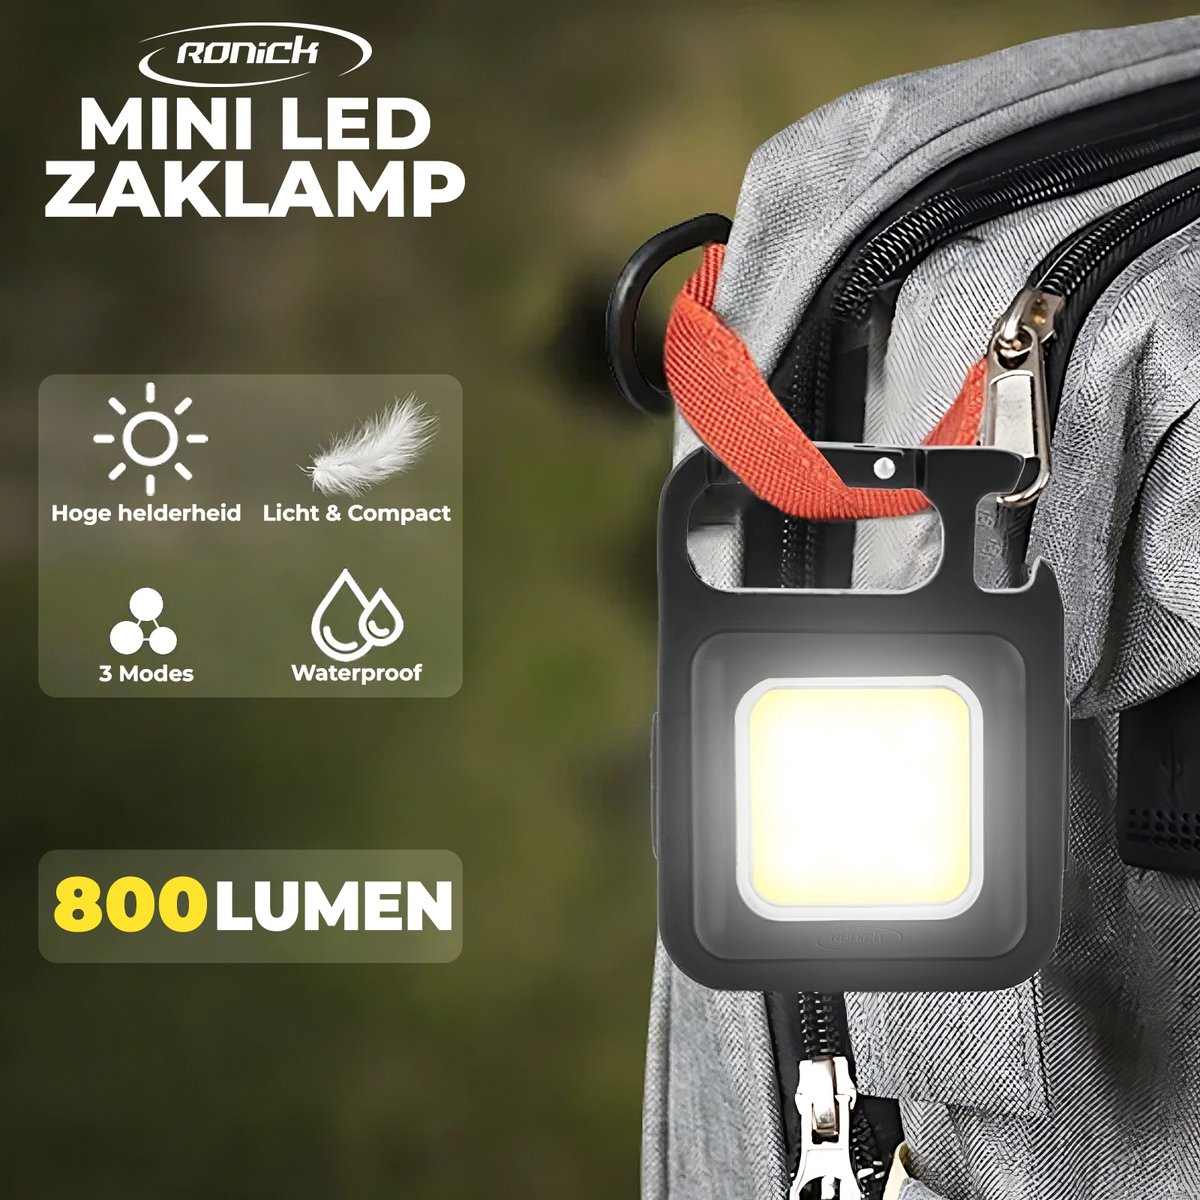 All-in-One Multifunctionele LED Zaklamp - 500 mA Batterij - Flesopener - Sleutelhanger - Mini Zaklamp 800 lumen